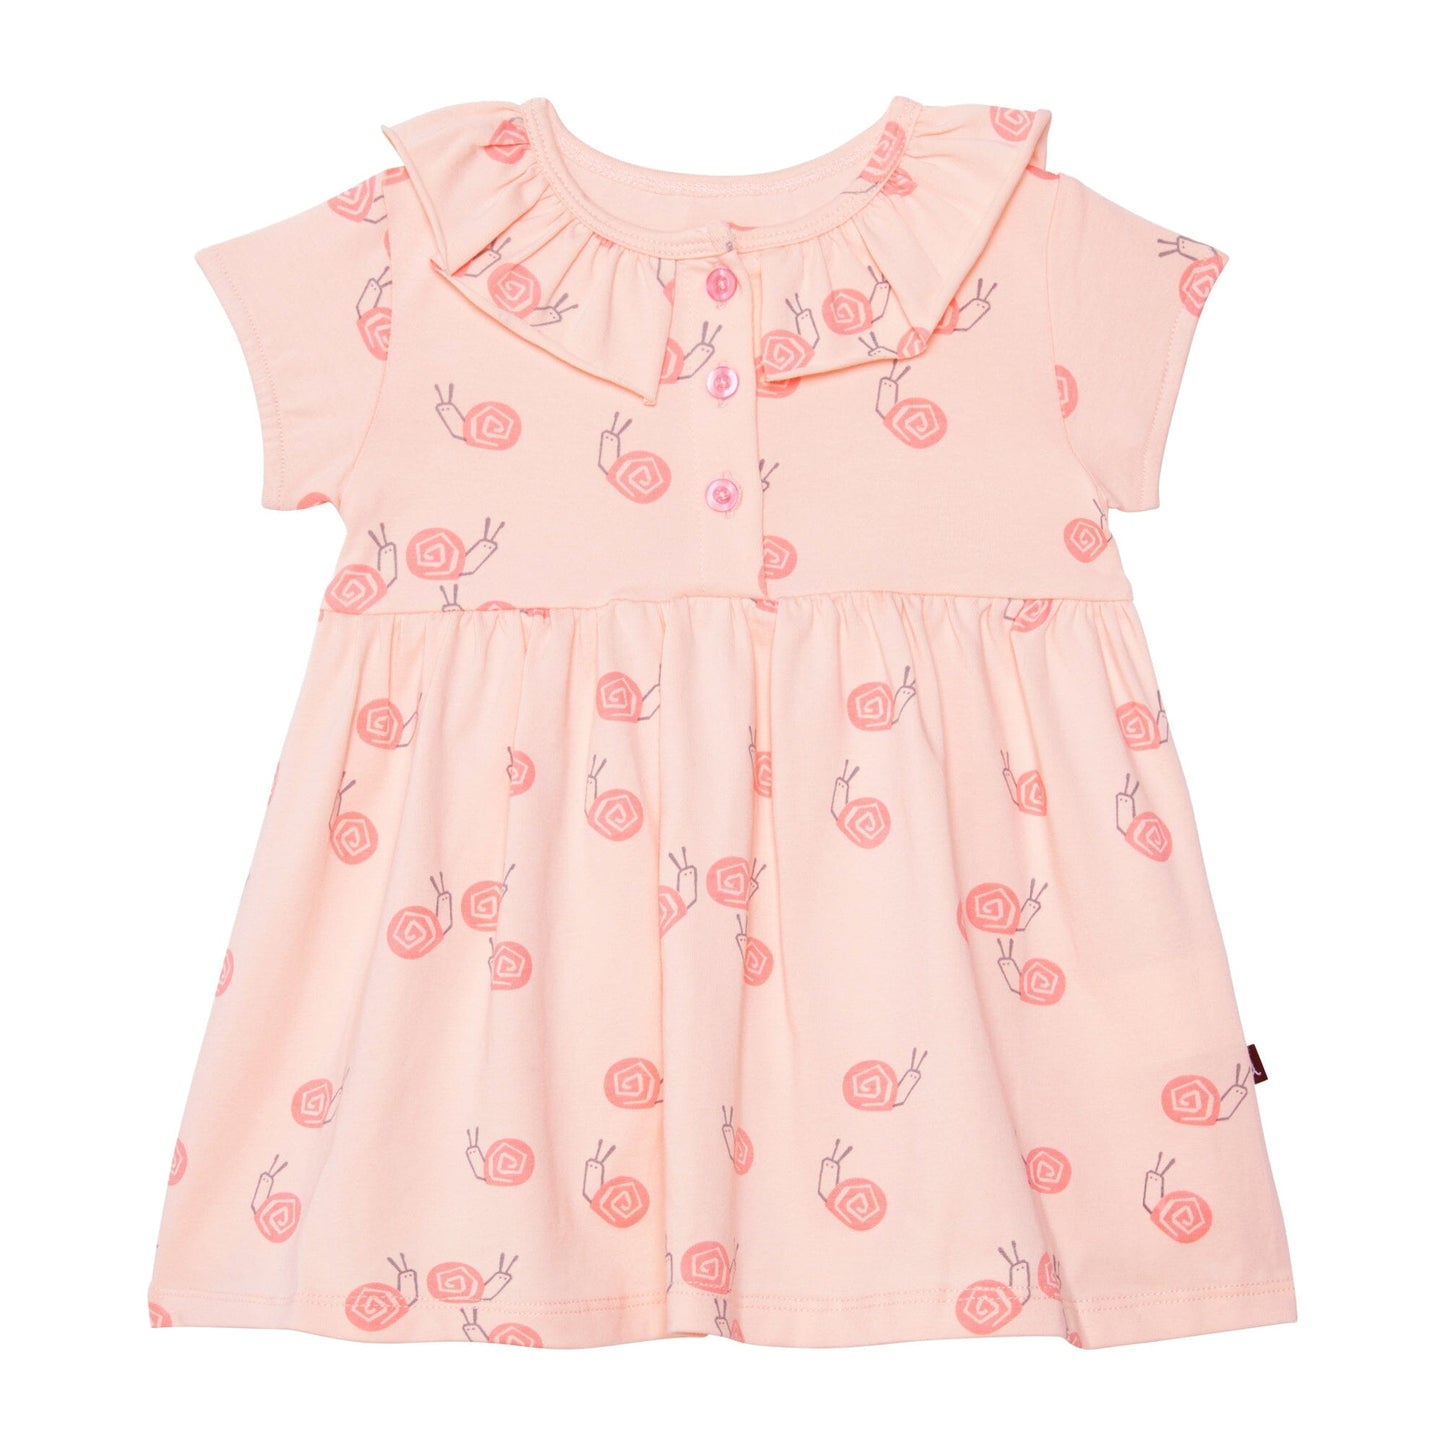 Organic Cotton Printed Dress Set Pink Snails Dresses Deux par Deux 